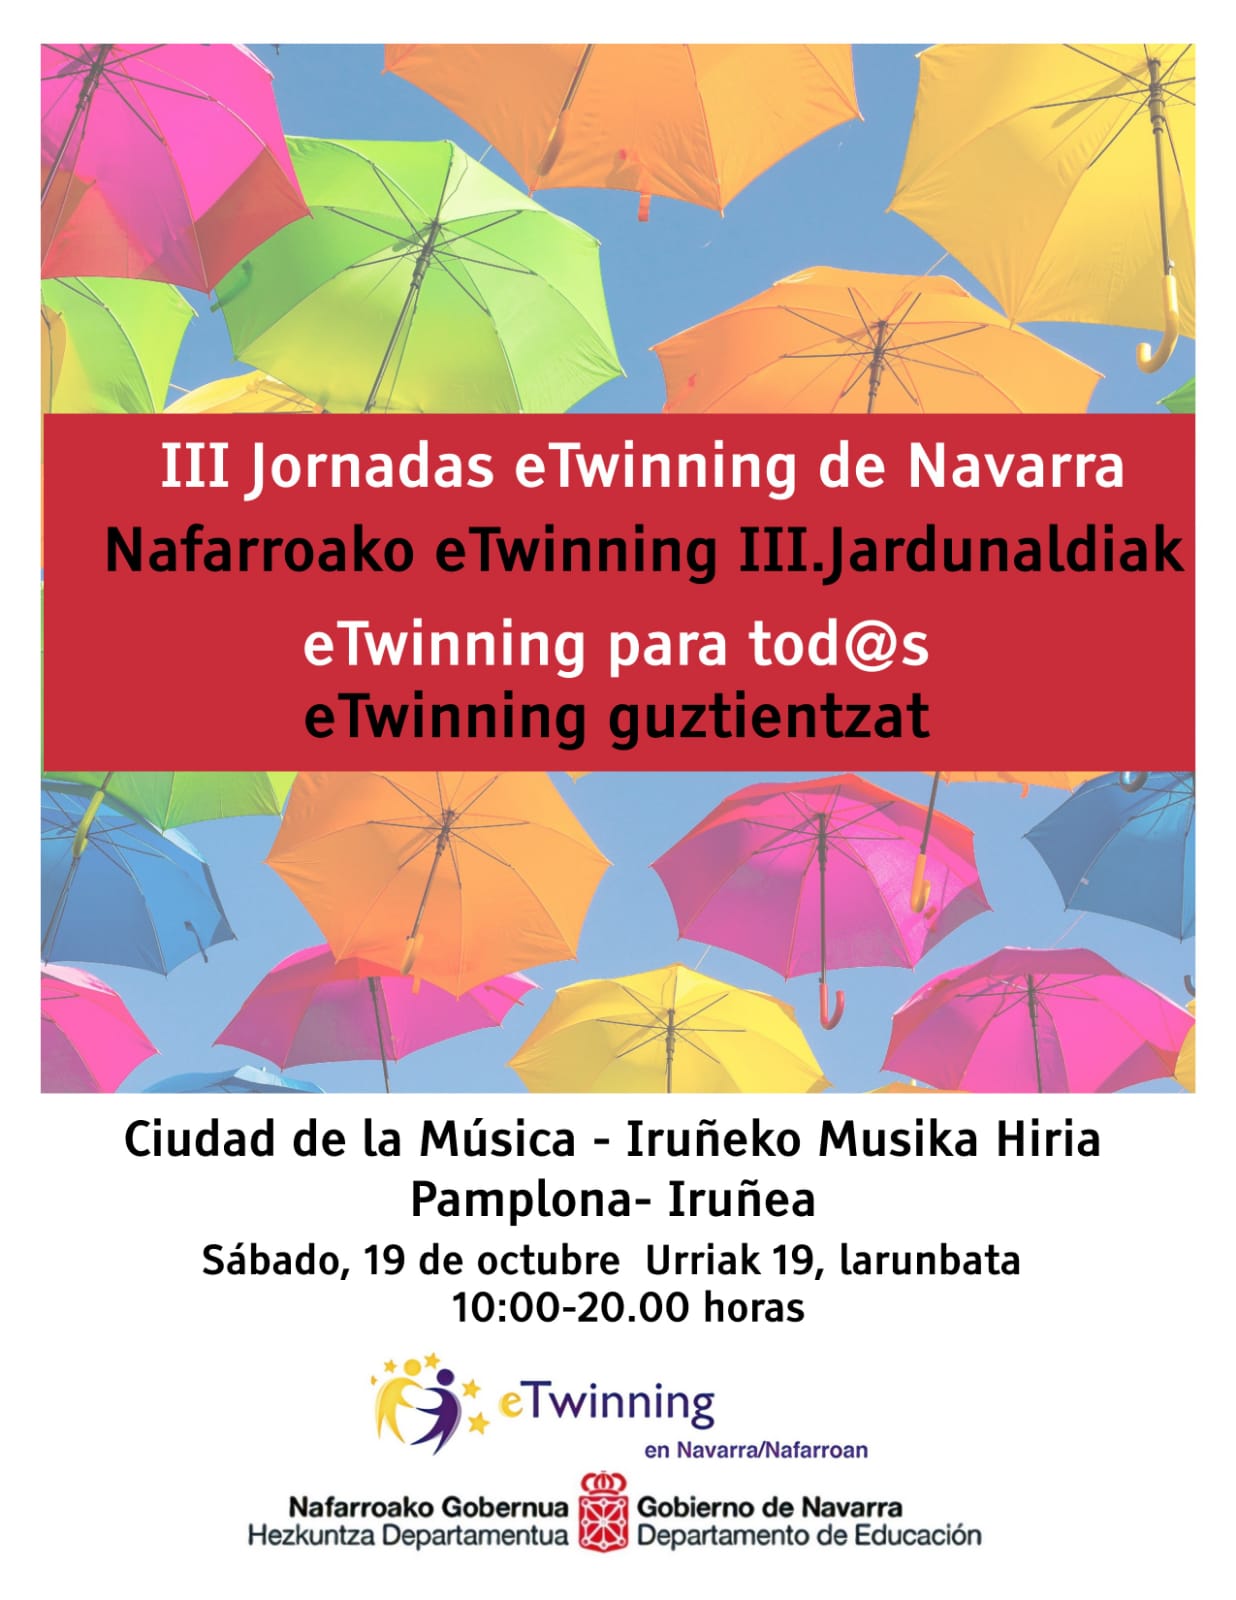 Recordatorio-III Jornadas eTwinning en Navarra, plazo tope de inscripción: 14 de octubre